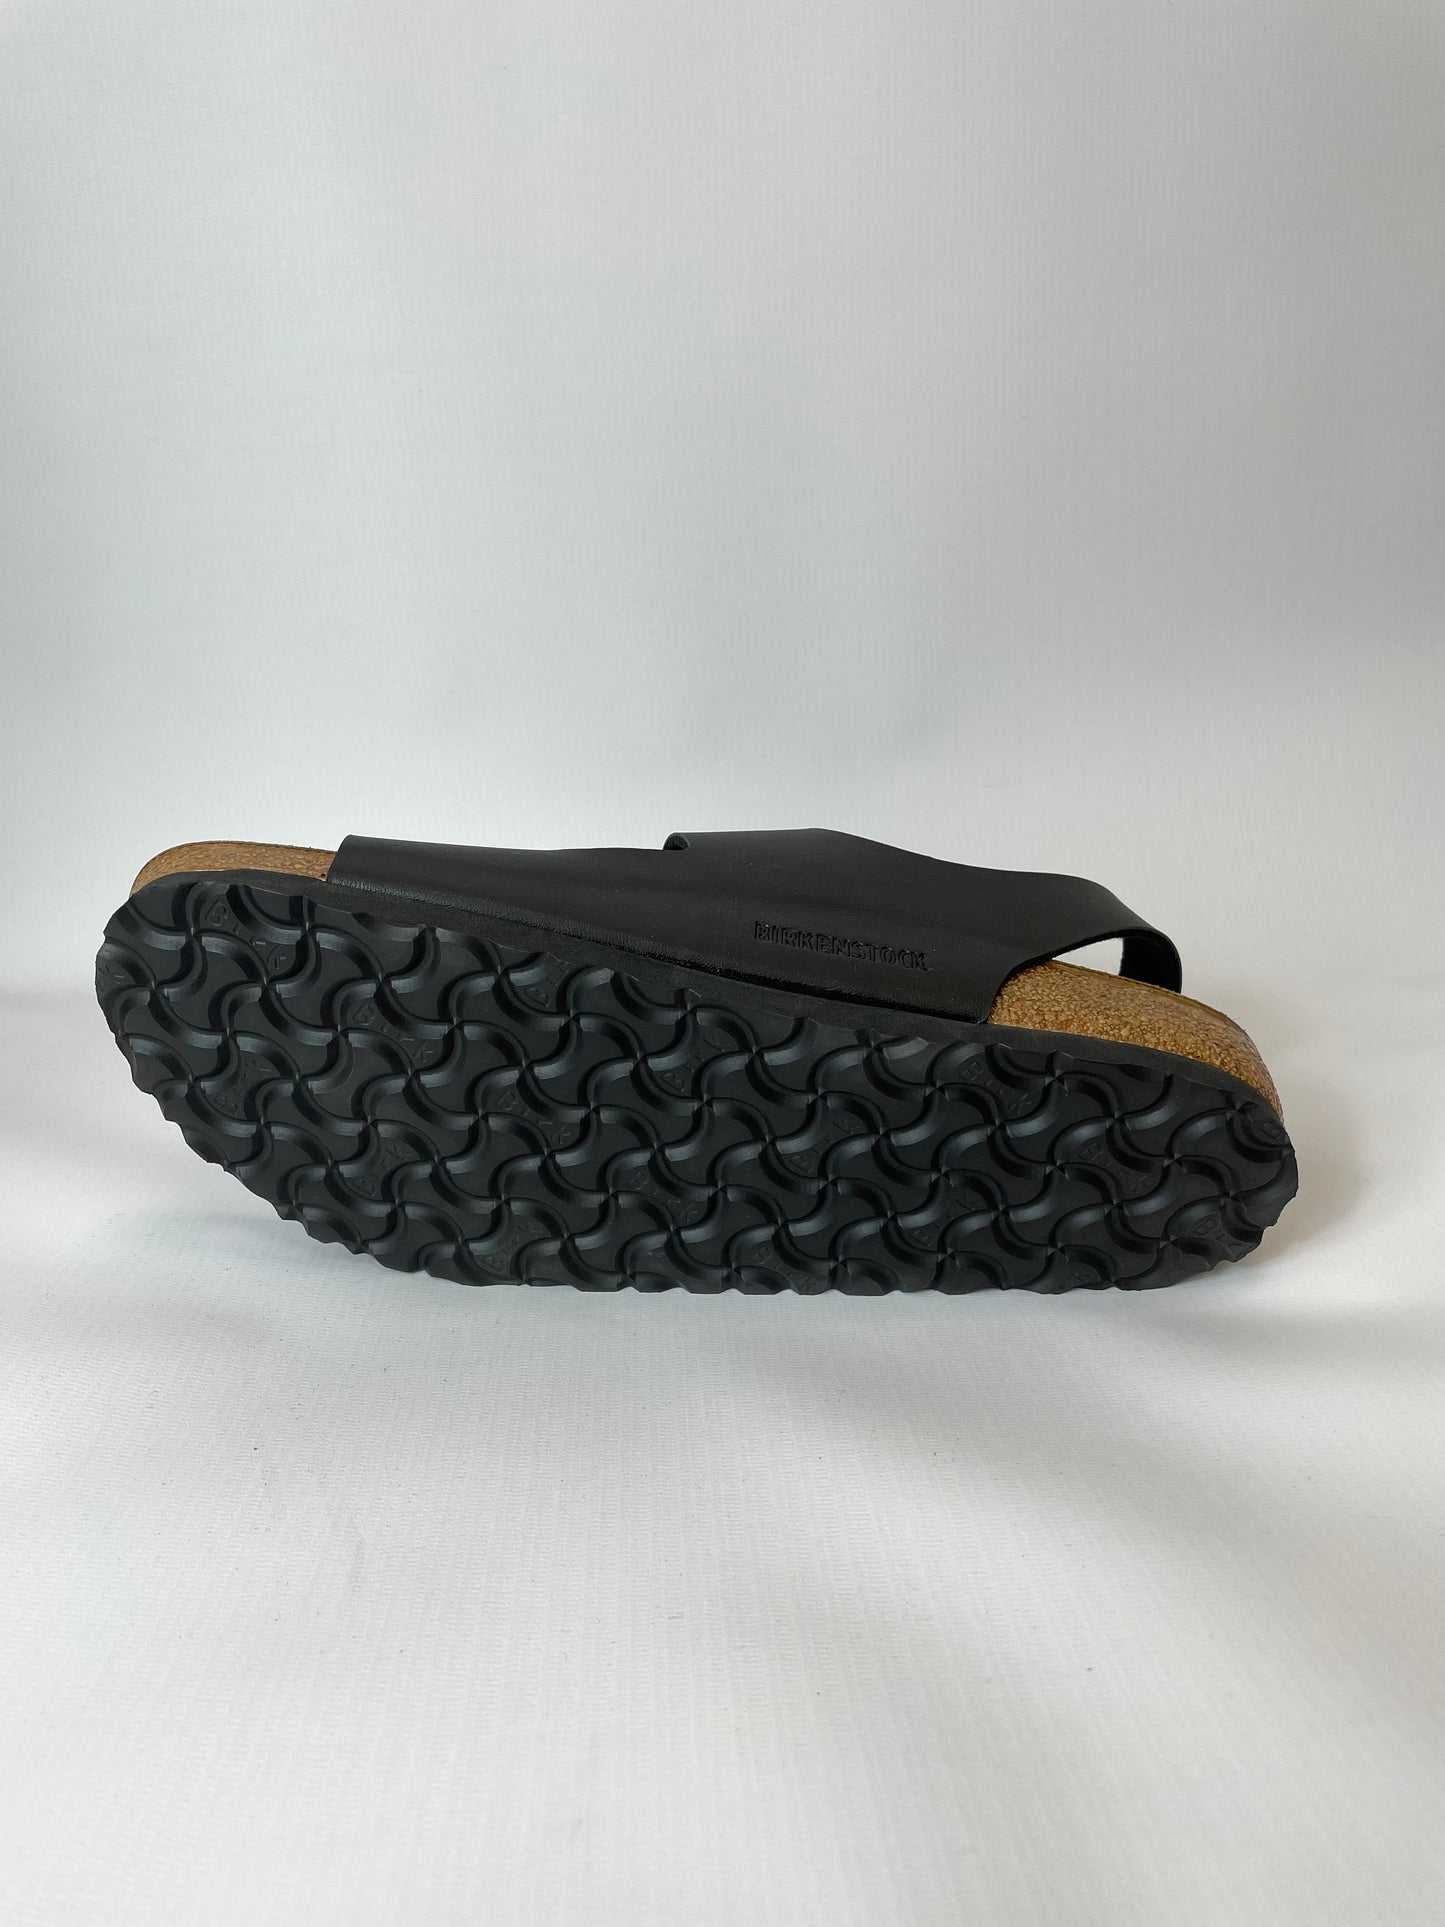 Birkenstock Milano Womens Sandals Black